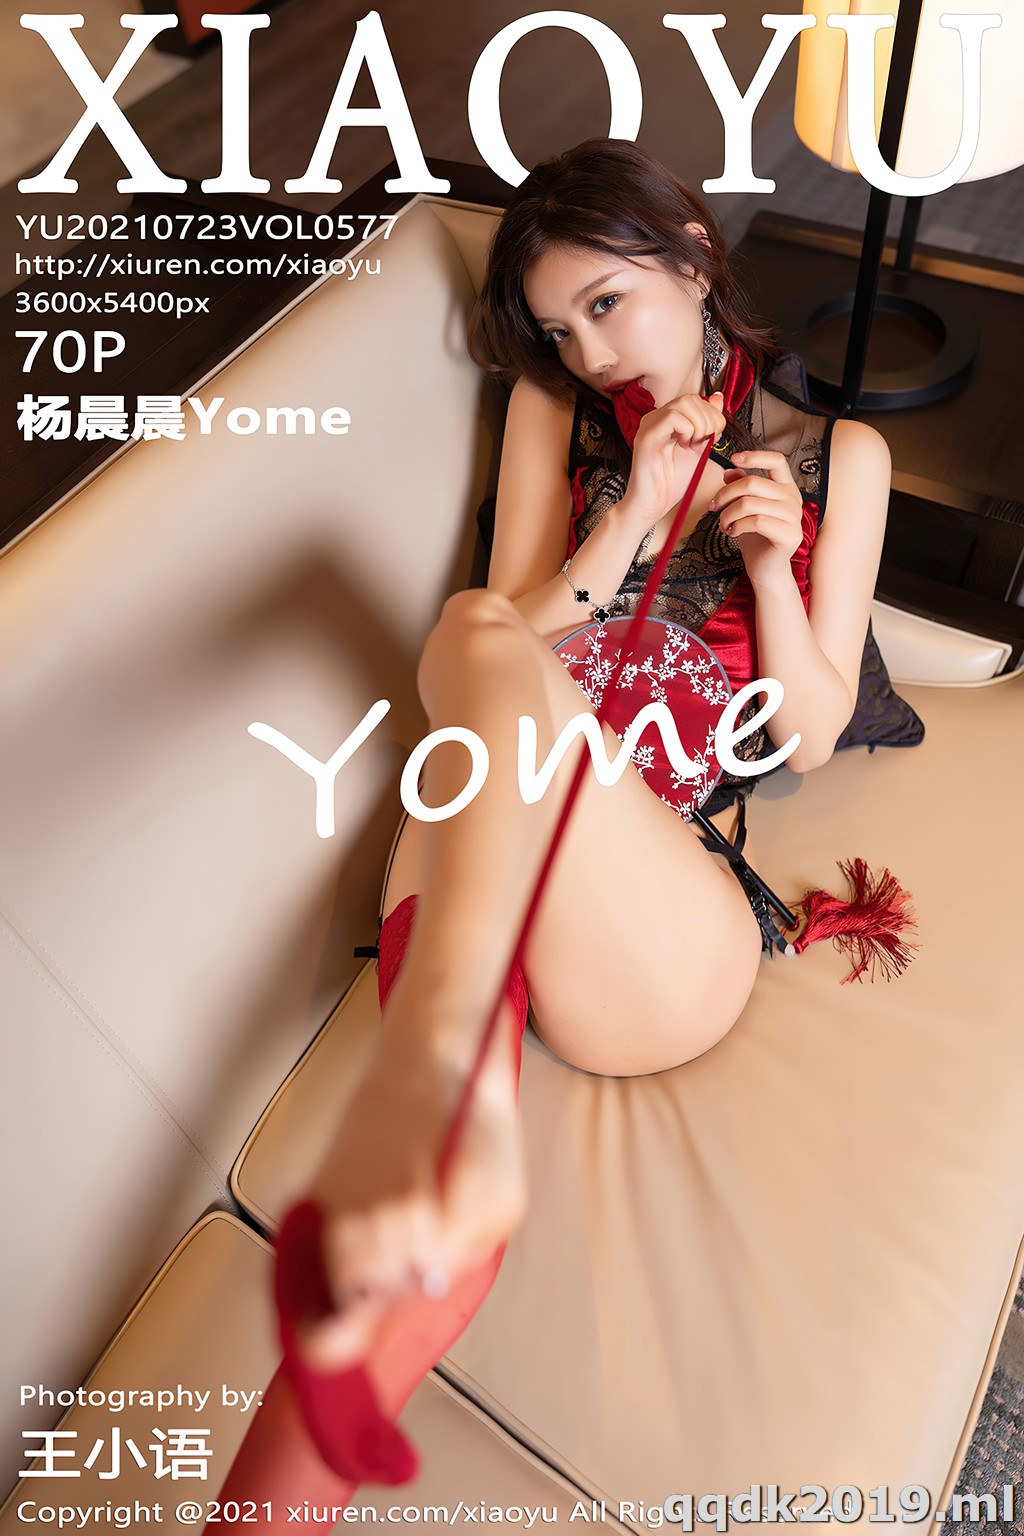 XiaoYu-Vol.577-Yang-Chen-Chen-Yome-071.jpg